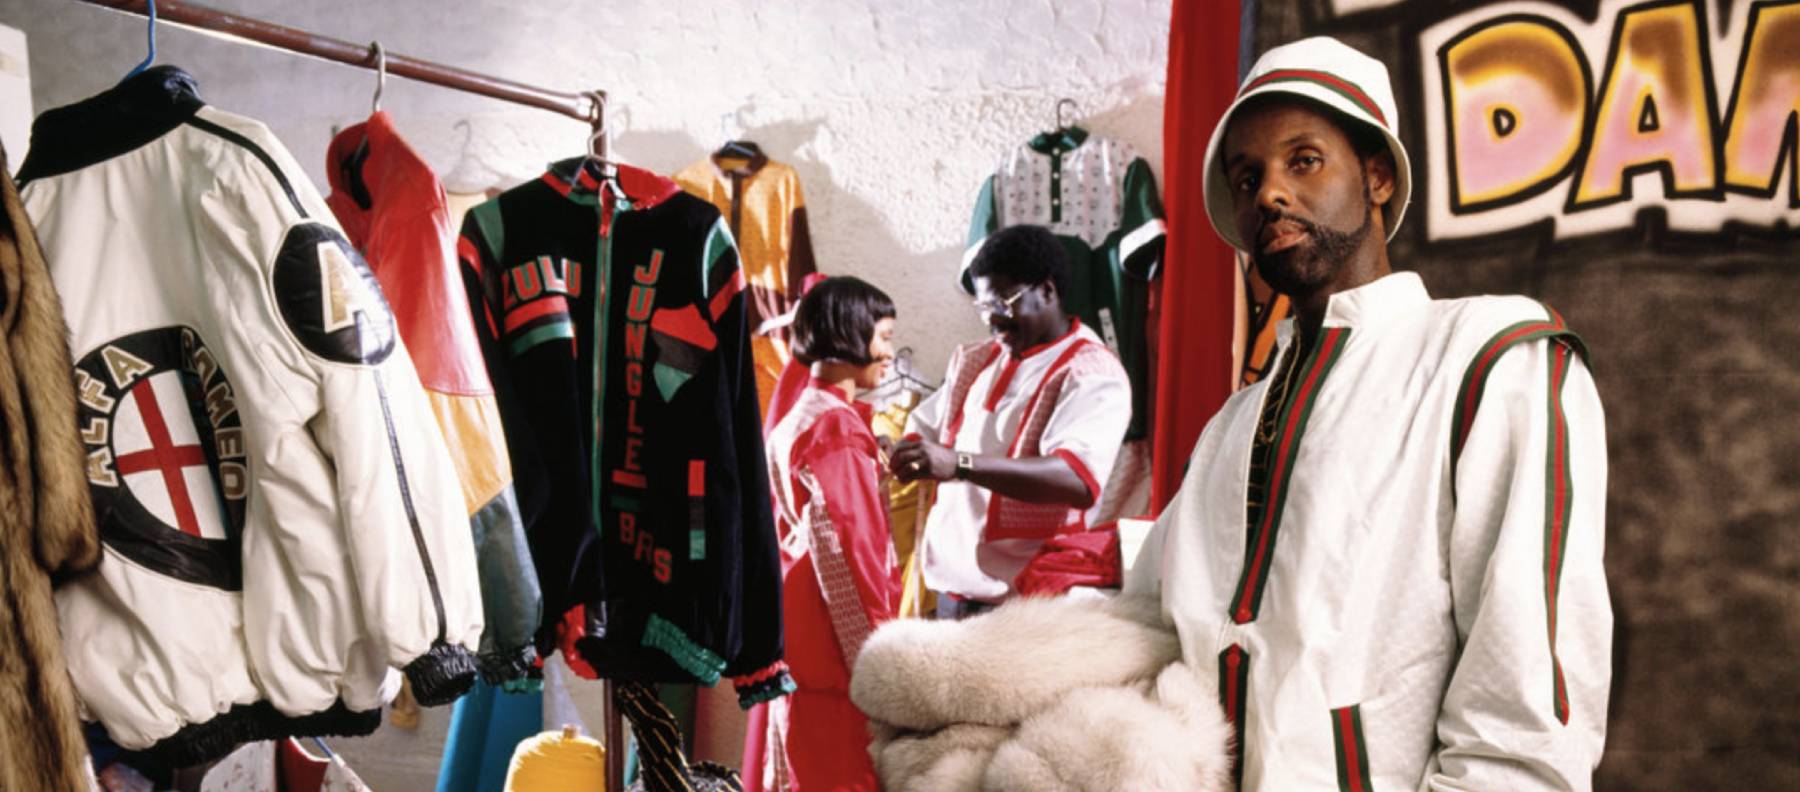 80年代 Nyストリート ファッションを席巻したダッパー ダン驚愕のライフ ストーリー 1 3 Yappari Hiphop